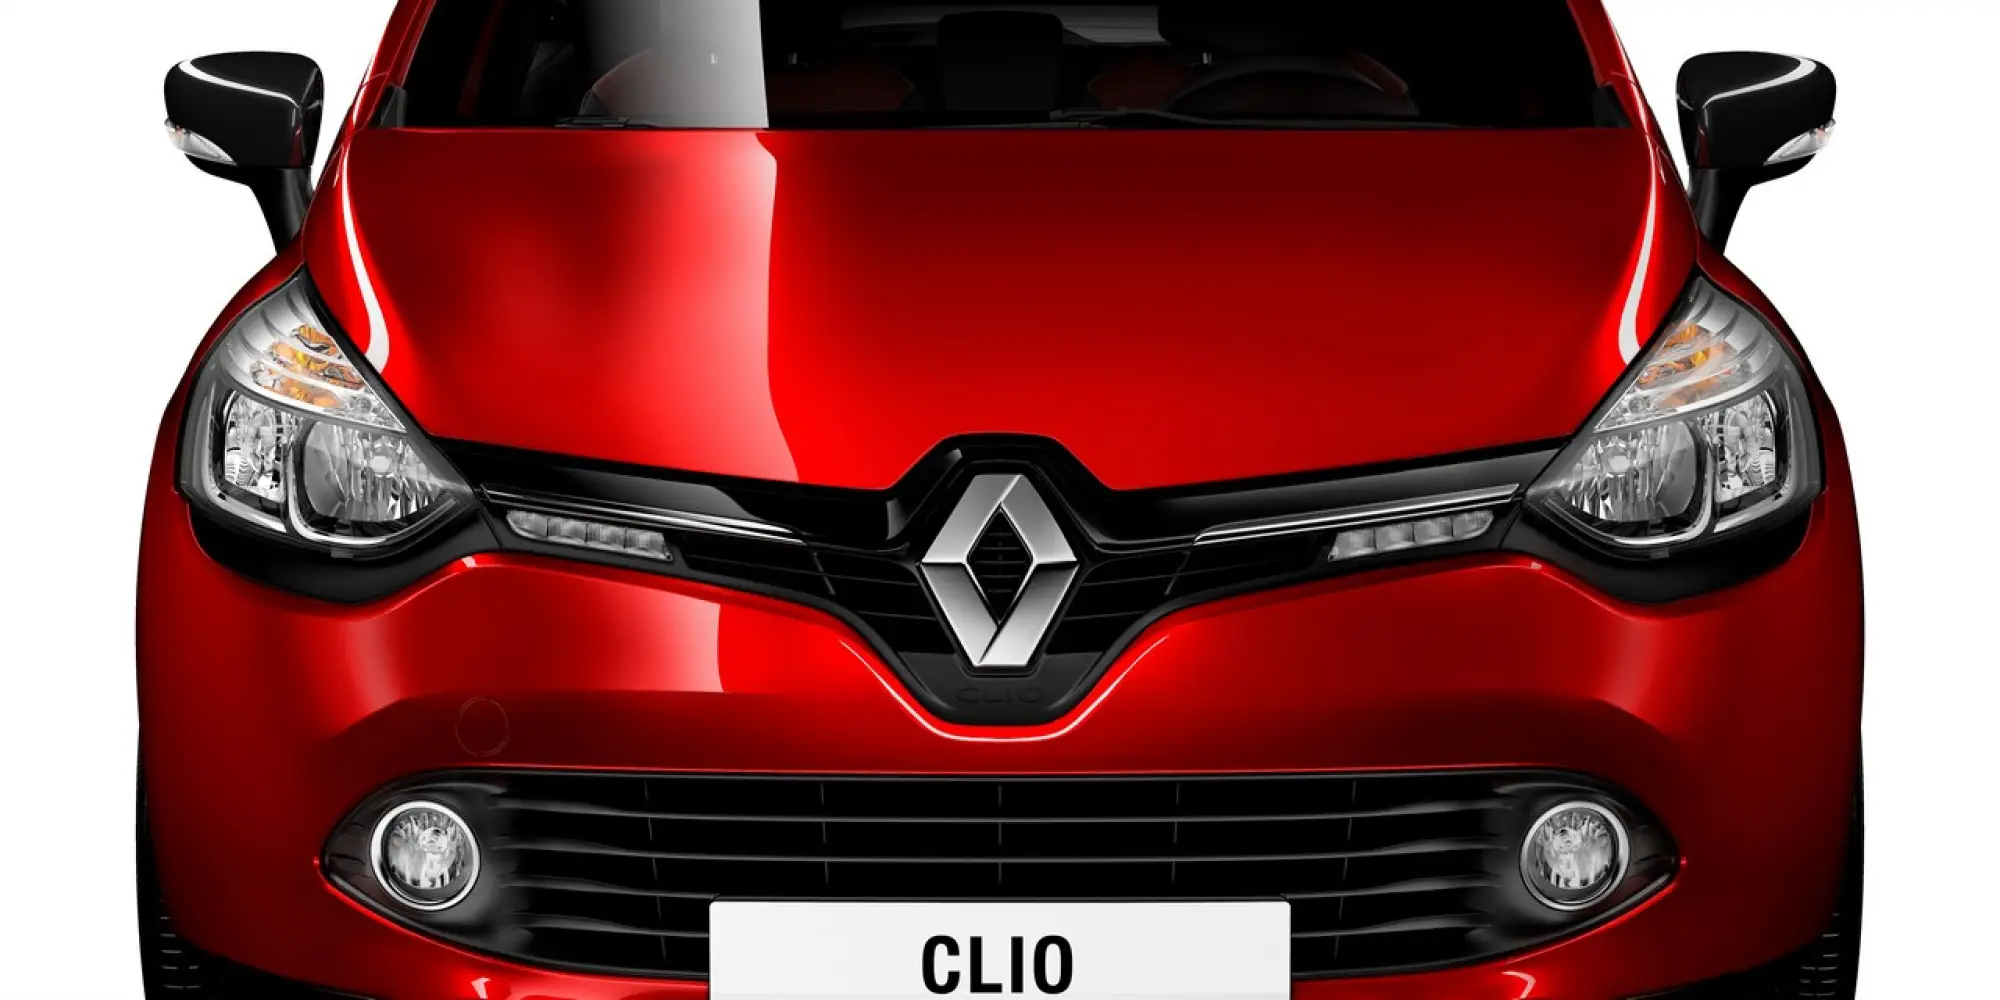 New Renault Clio - Salone di Parigi 2012 - 23